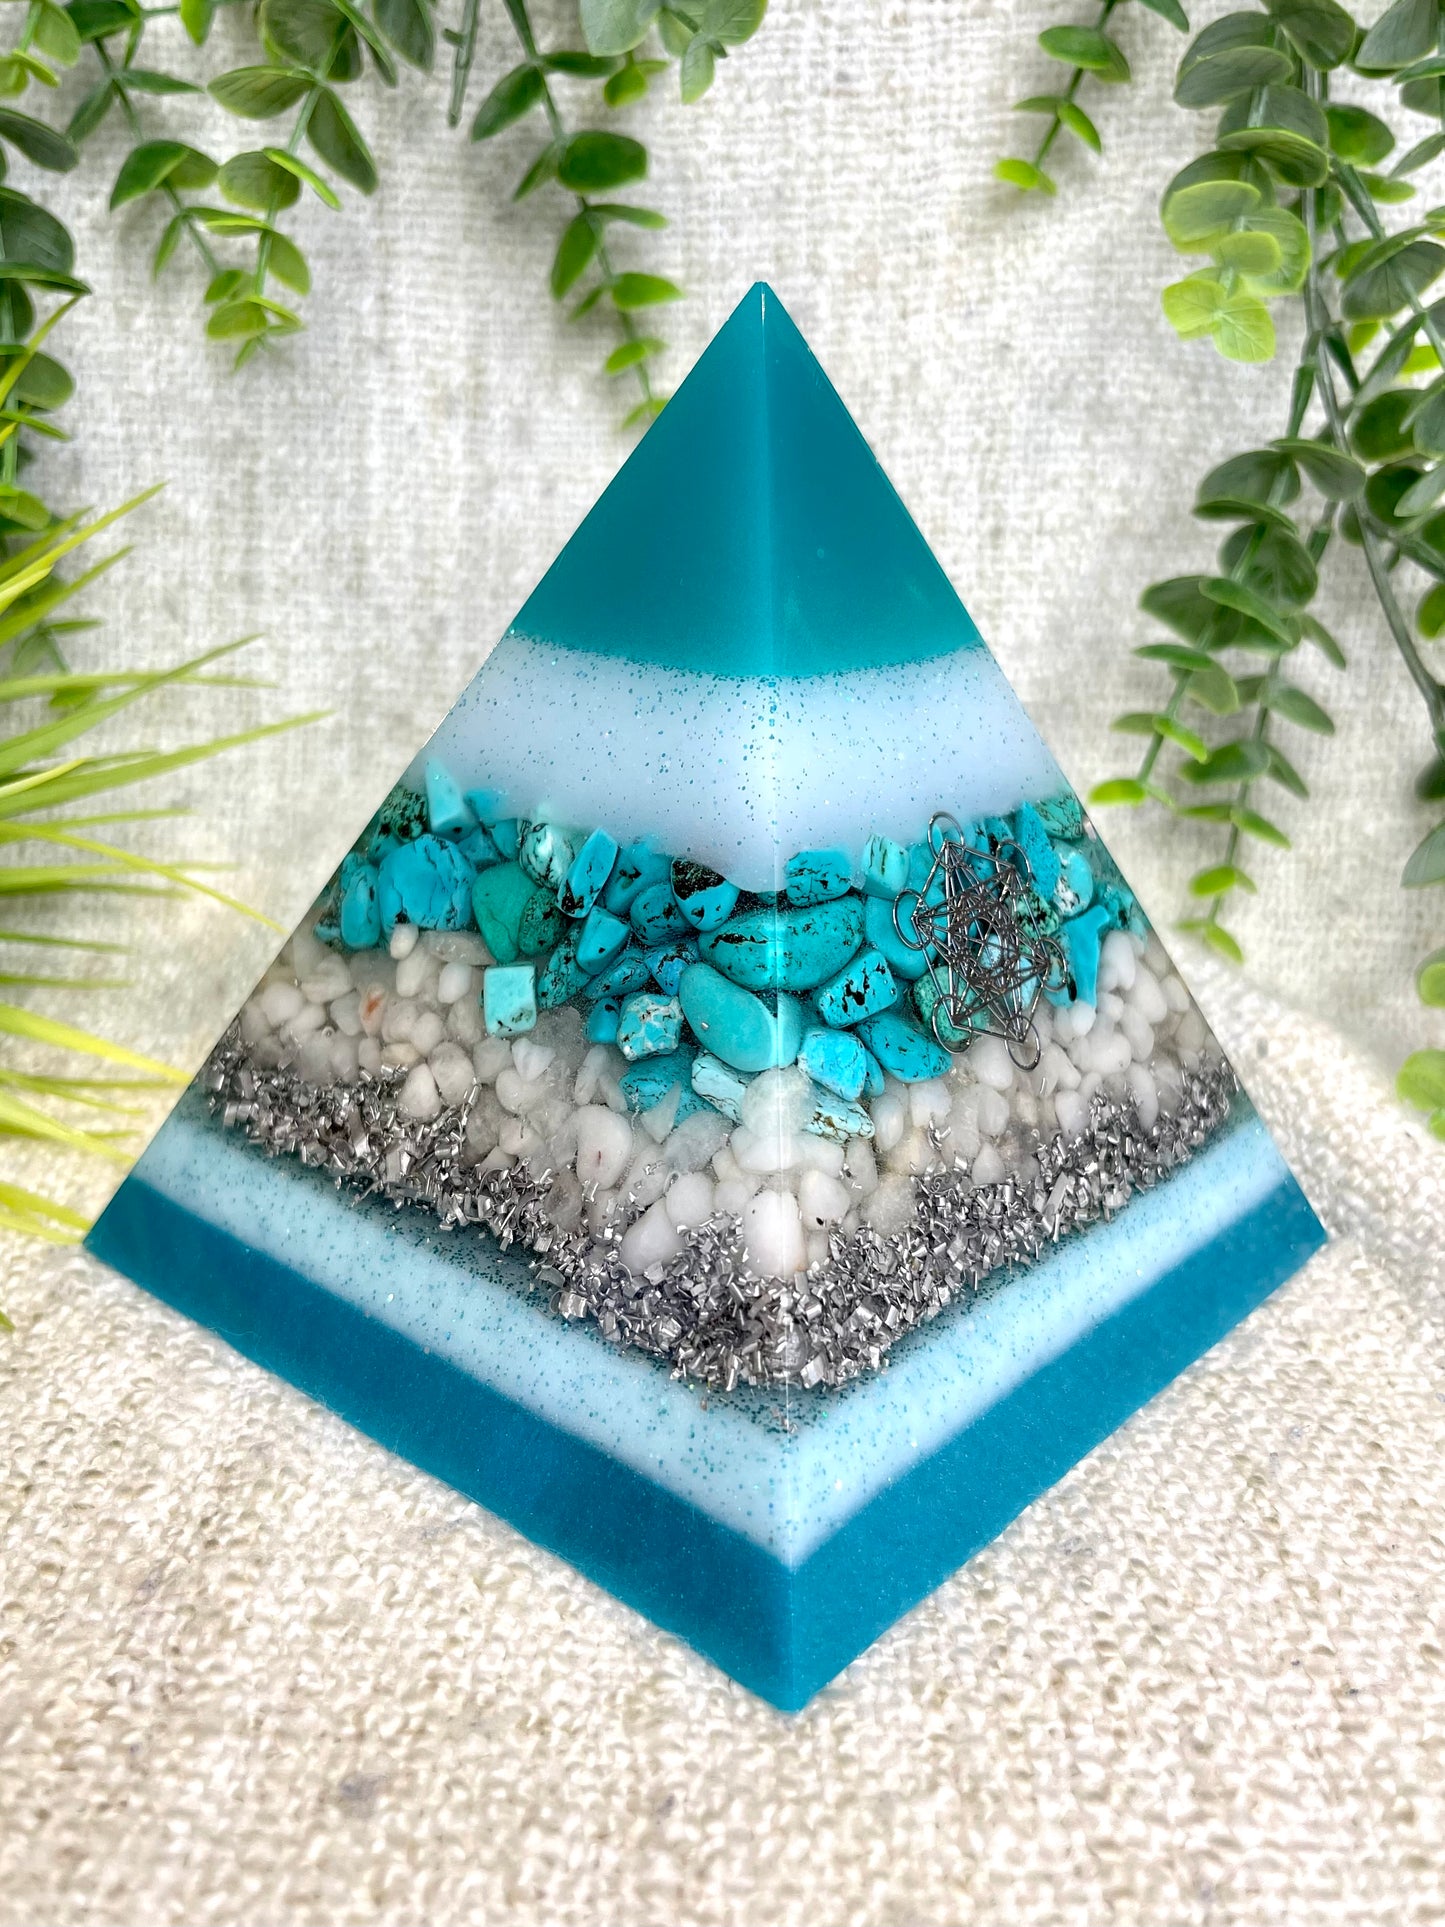 GABRIELA - Orgonite Pyramid - EMF Protector - Turquoise, White Milky Quartz and Aluminum Metals